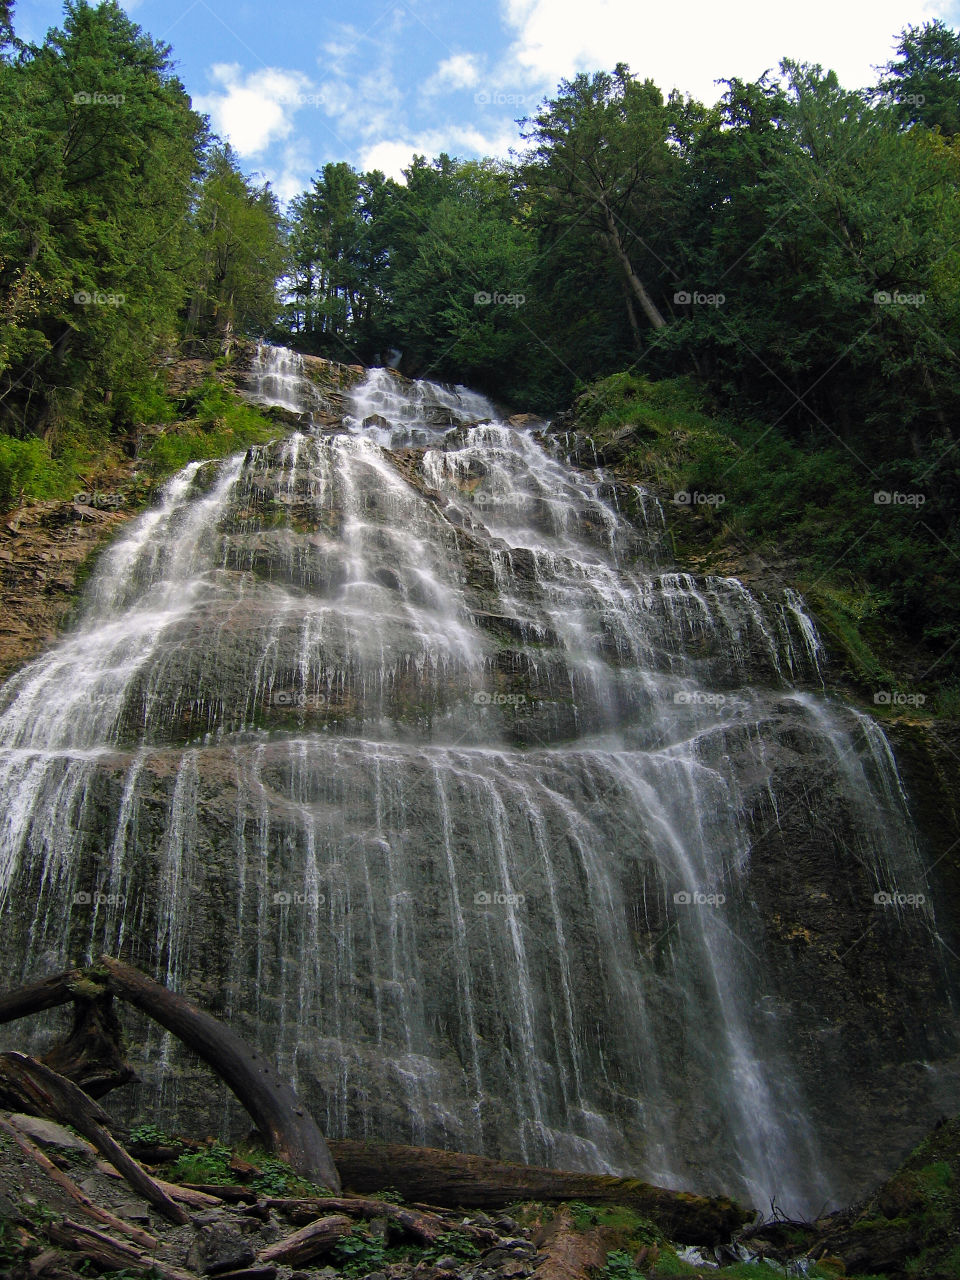 Bridal Falls waterfall, Bridal Falls Provintional park, British Columbia, Canada